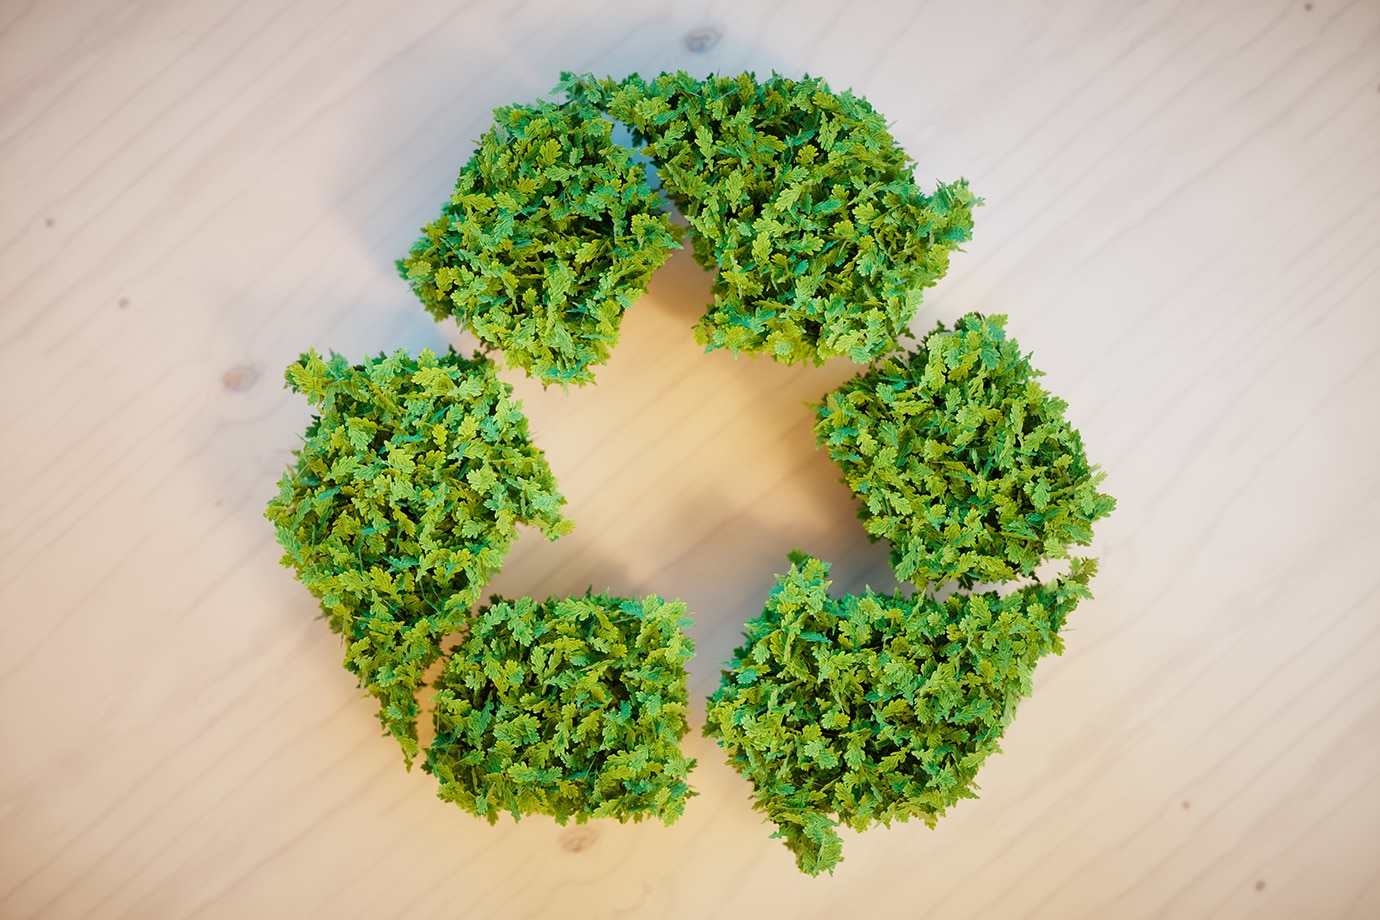 O que o tratamento de resíduos agrega à meta de reciclagem?